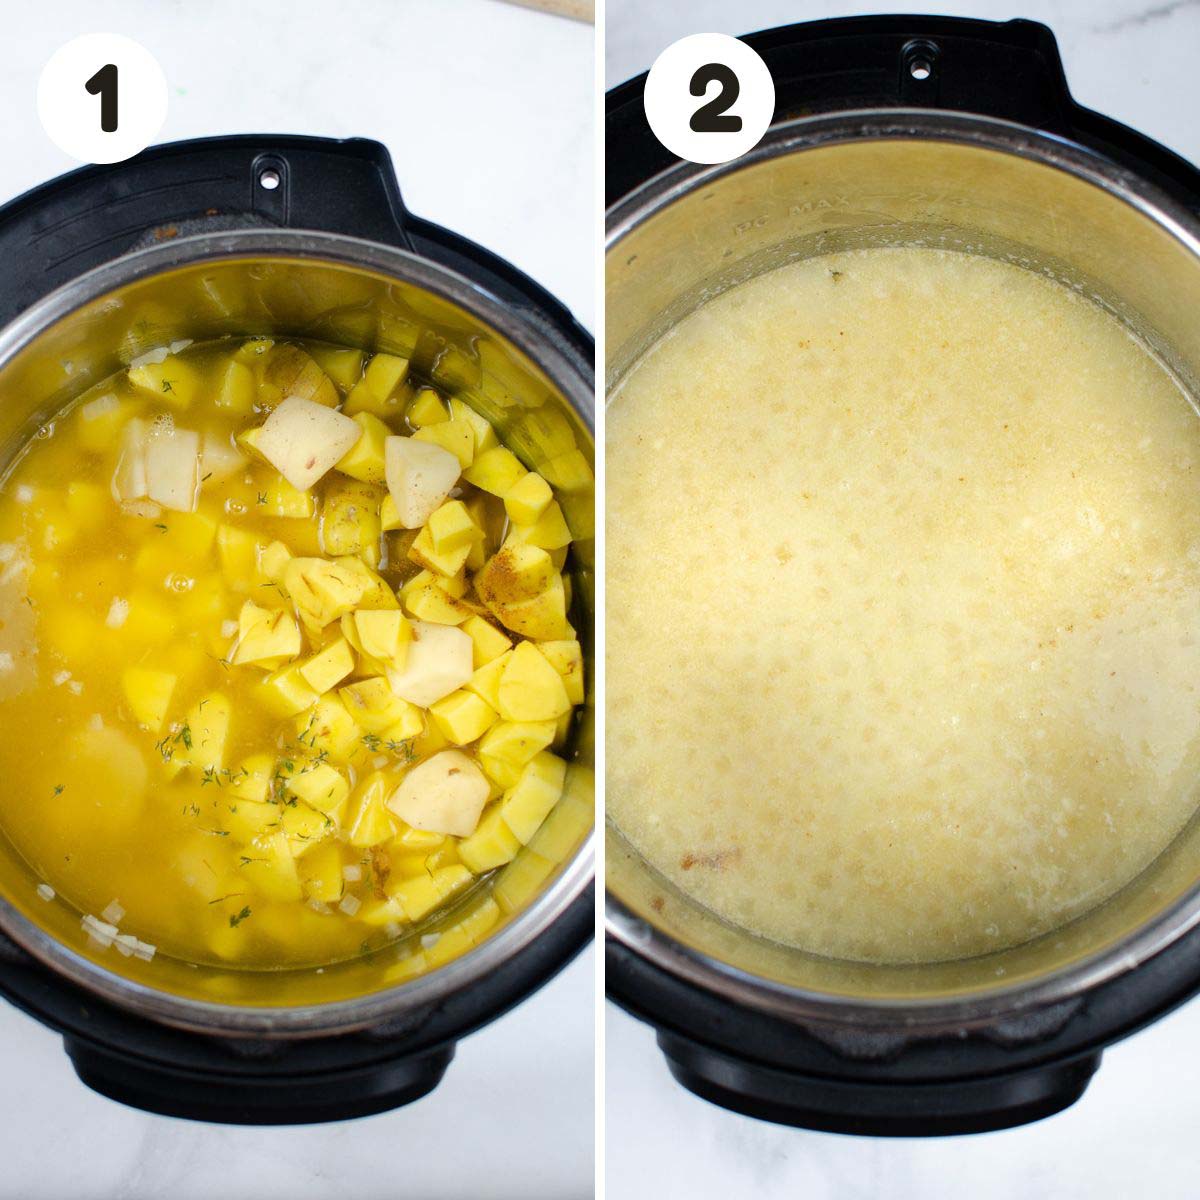 Steps to make the potato soup.